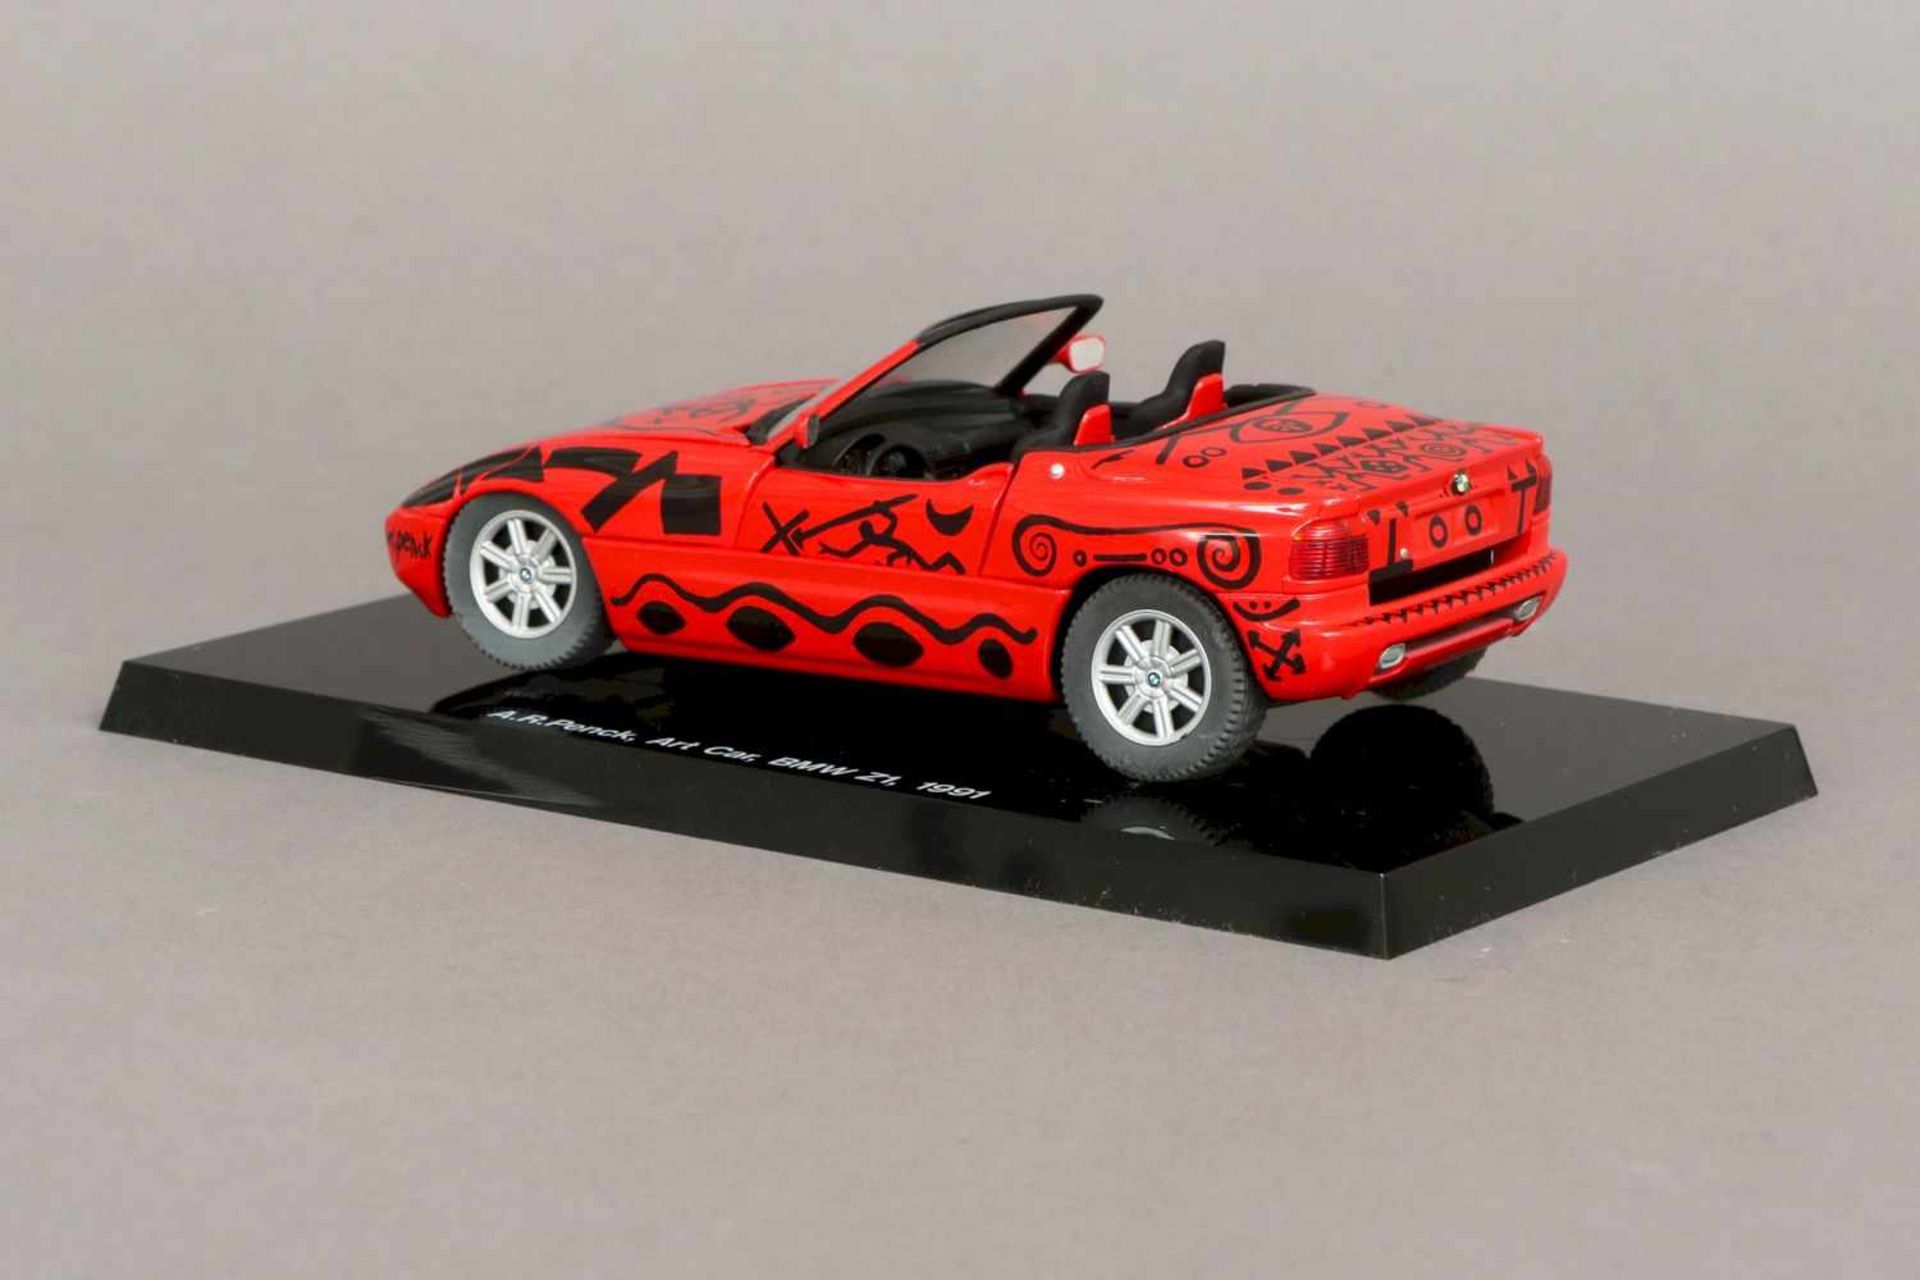 A.R. PENCK Modellauto ¨Art Car BMW Z1¨Metall und Kunststoff, rot-schwarz lackiert, an Front- - Bild 3 aus 3